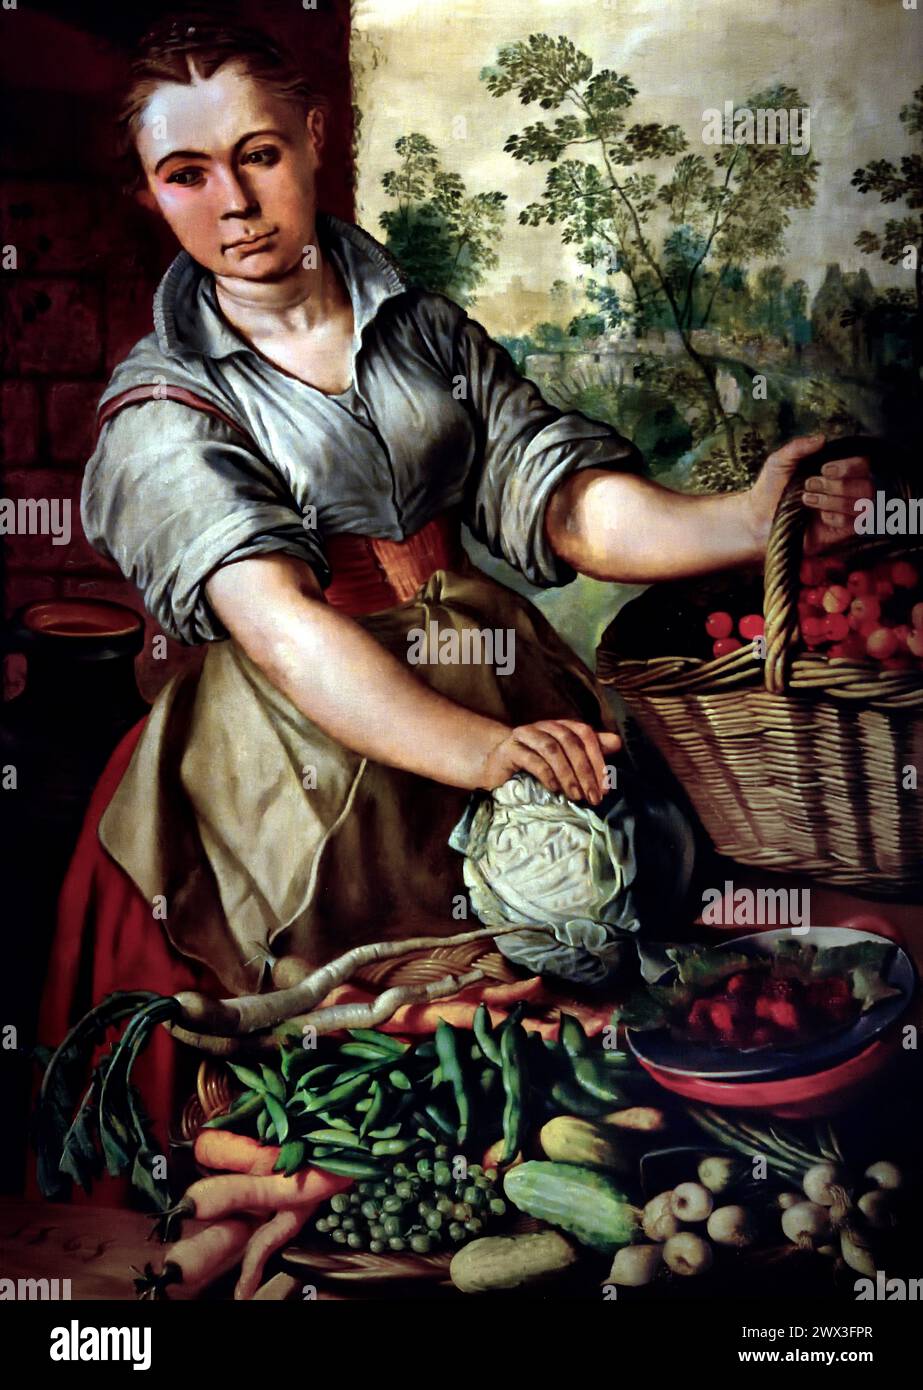 Gemüseverkäufer von 1565 Joachim Beuckelaer 1533 - 1575 Museum Mayer van den Bergh, Antwerpen, Belgien, Belgien. Stockfoto